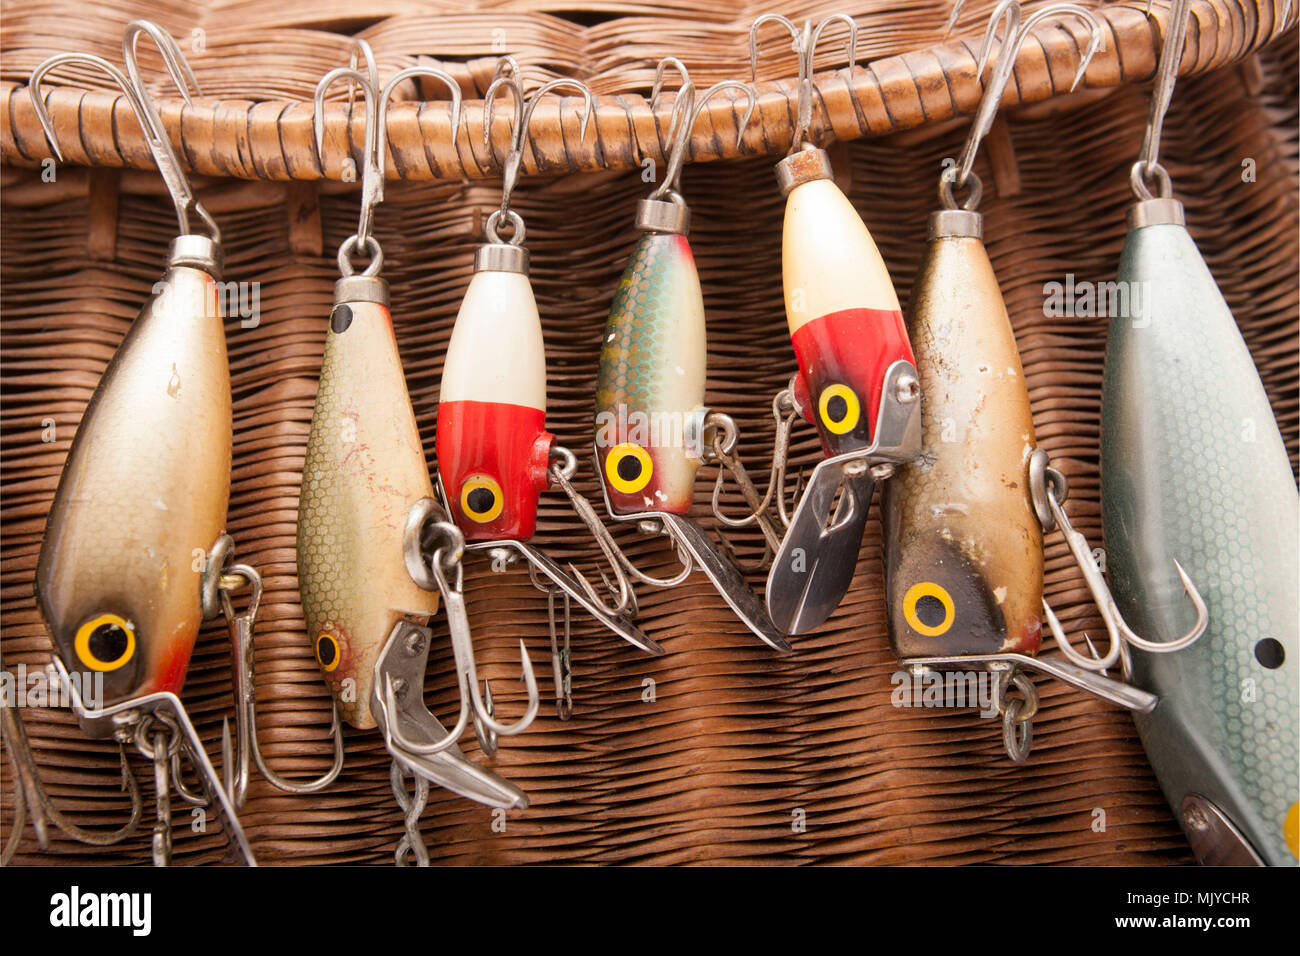 Immagini Stock - Una Serie Di Esche Da Pesca E Attrezzature Per La Pesca..  Image 189334000